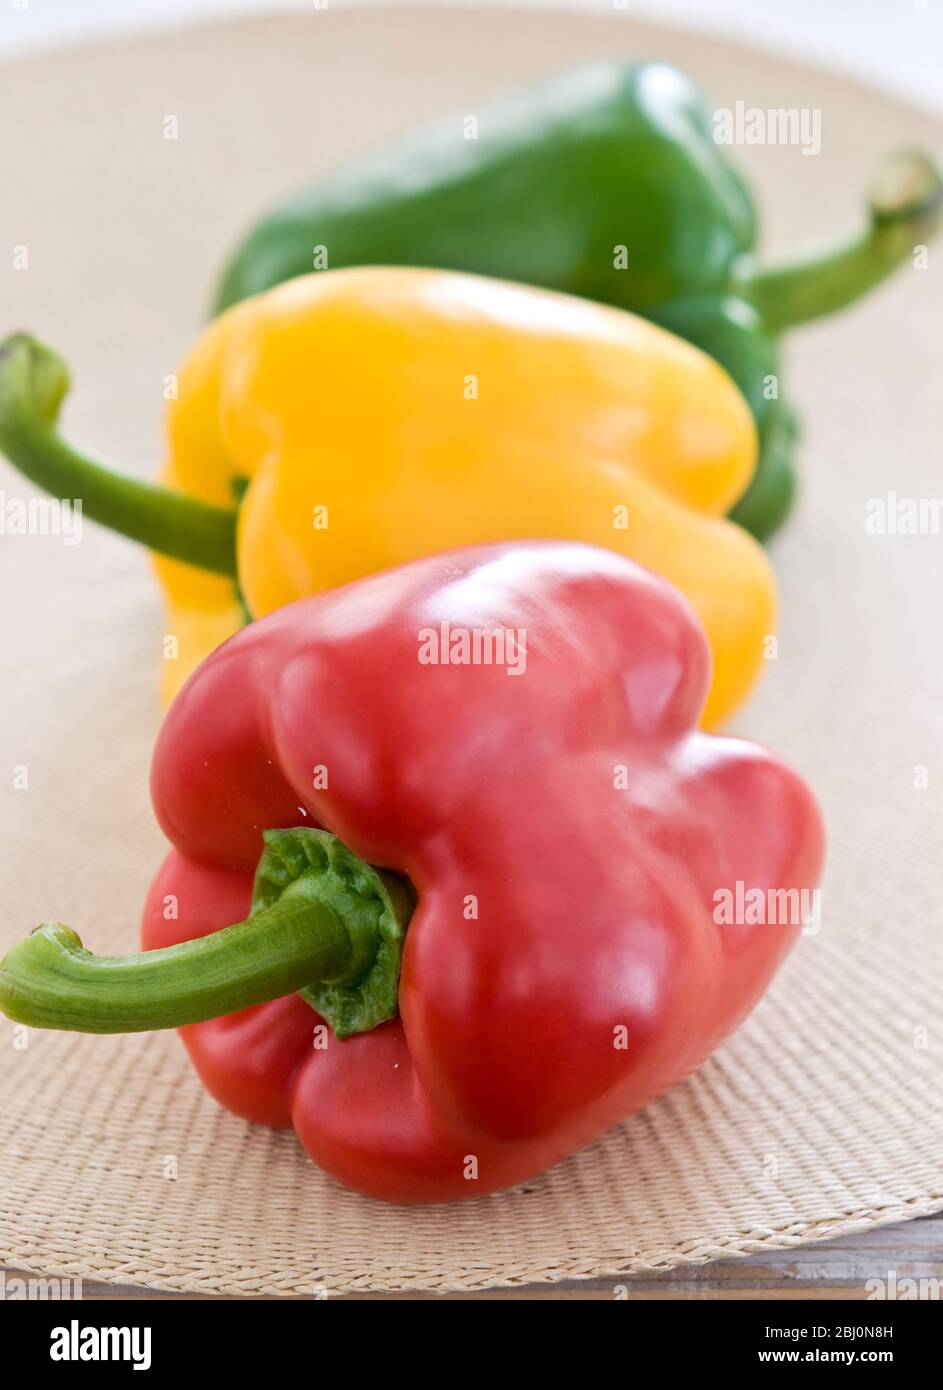 Drei glänzende Paprika, rot, grün und gelb - Stockfoto